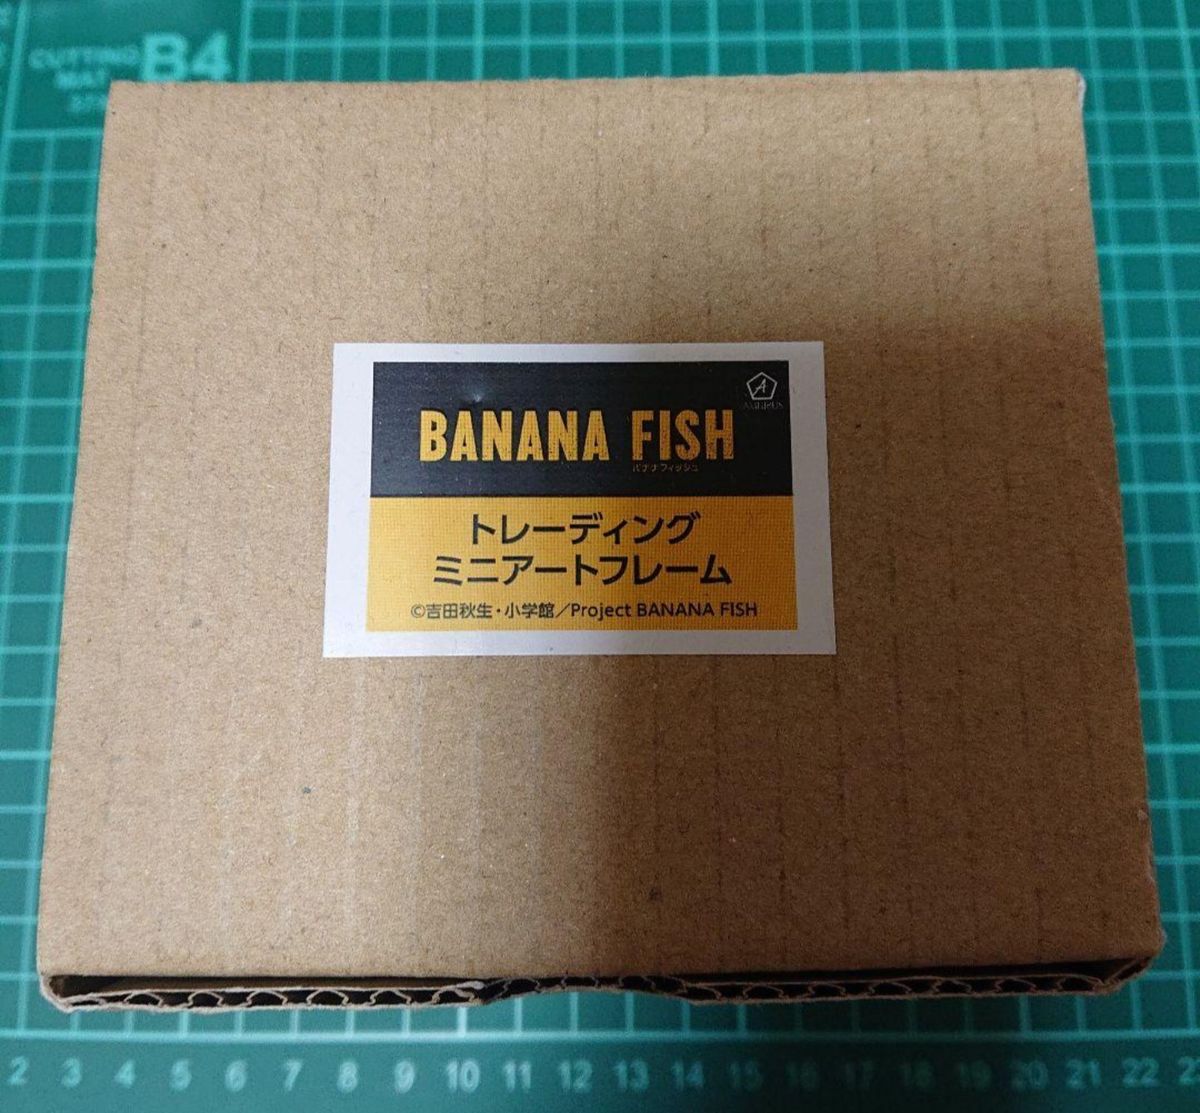 BANANA FISH トレーディングミニアートフレーム BOX 全10種